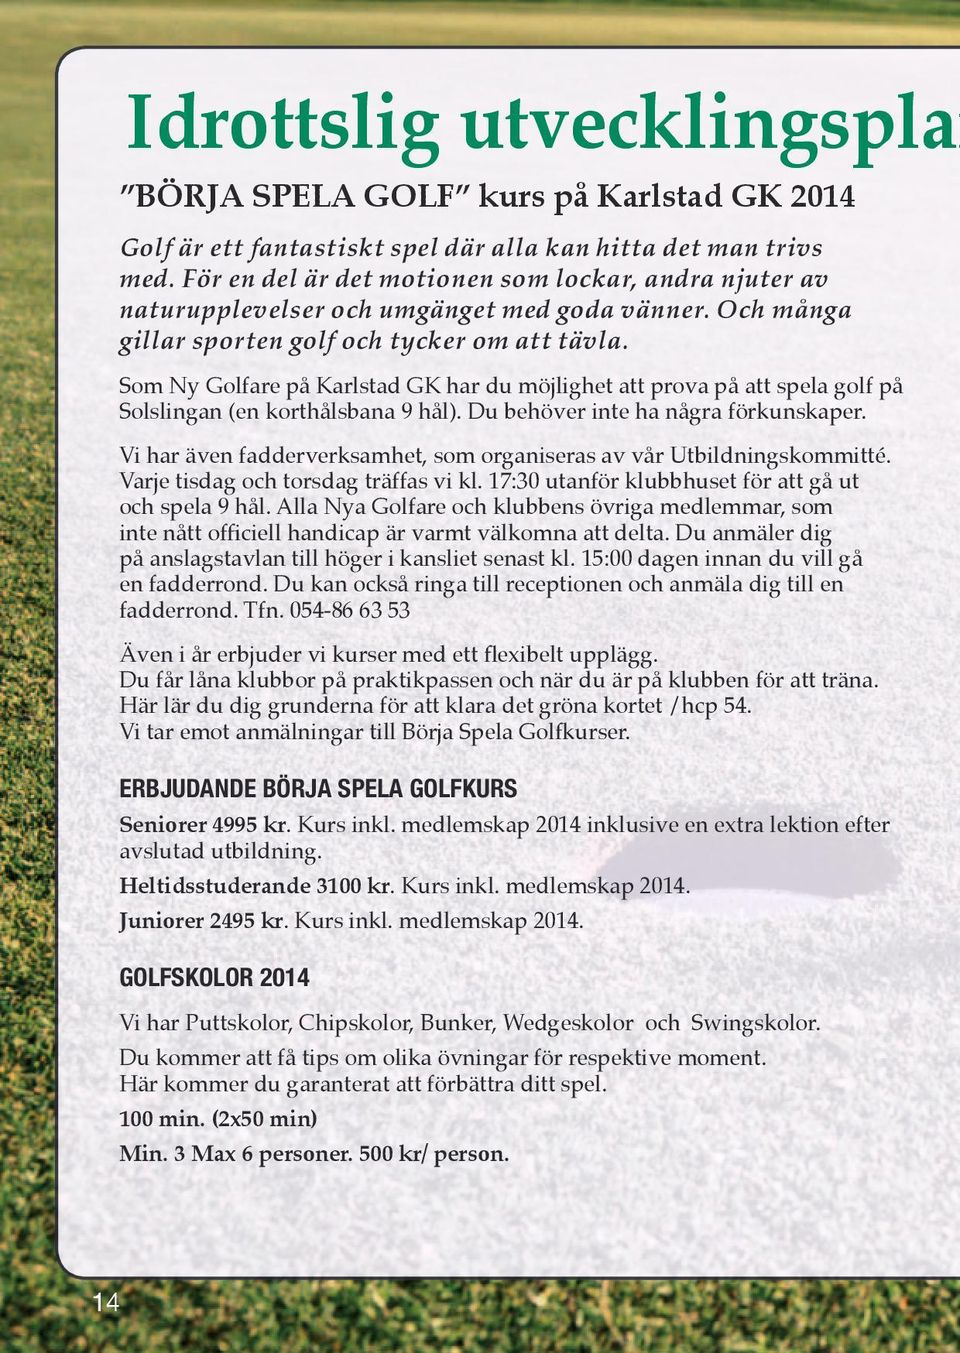 Som Ny Golfare på Karlstad GK har du möjlighet att prova på att spela golf på Solslingan (en korthålsbana 9 hål). Du behöver inte ha några förkunskaper.